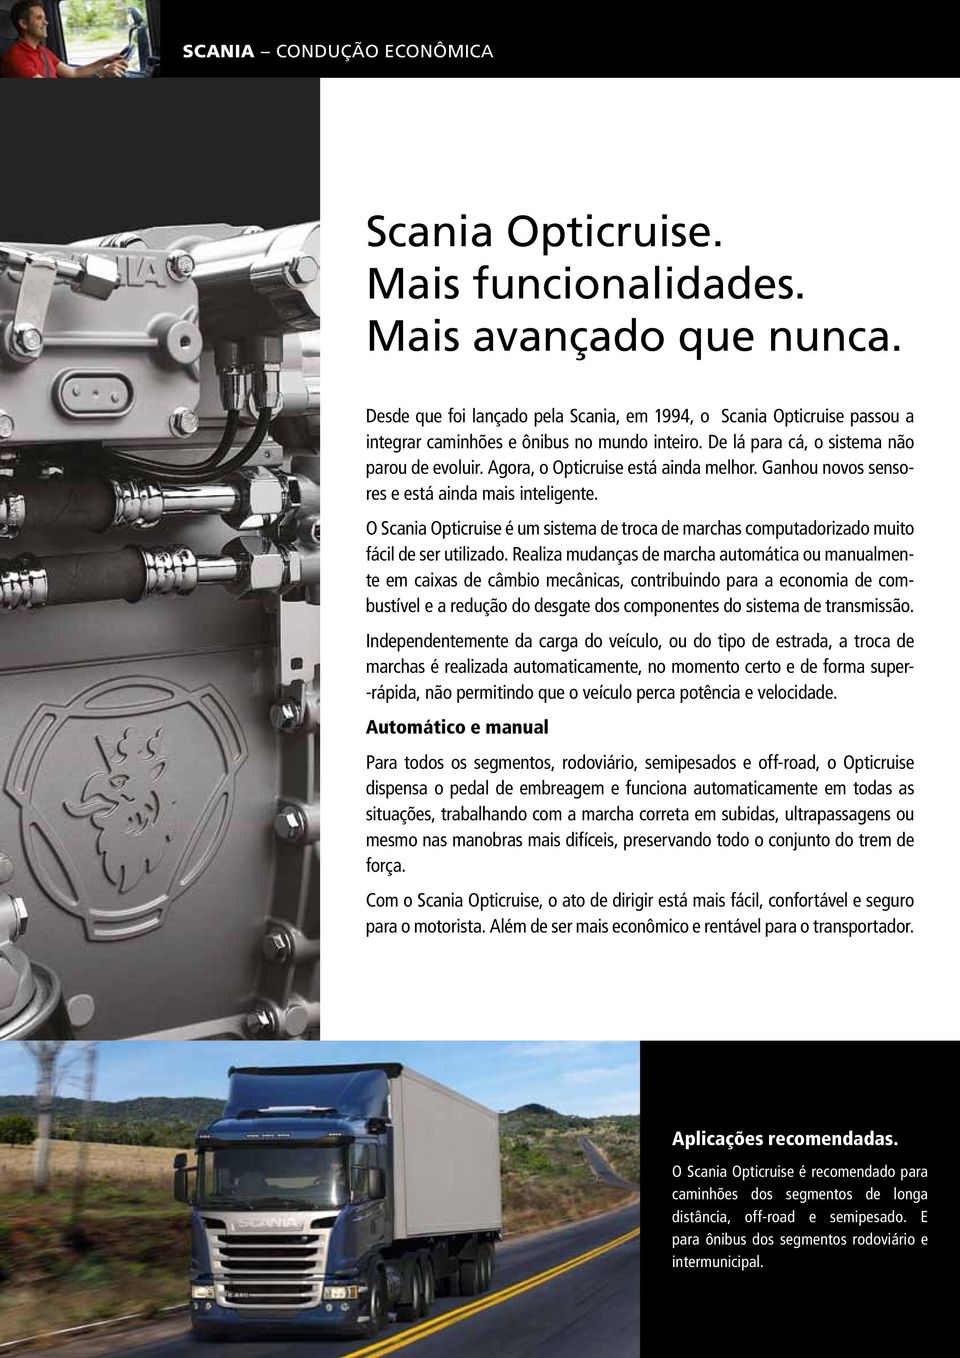 Agora, o Opticruise está ainda melhor. Ganhou novos sensores e está ainda mais inteligente. O Scania Opticruise é um sistema de troca de marchas computadorizado muito fácil de ser utilizado.